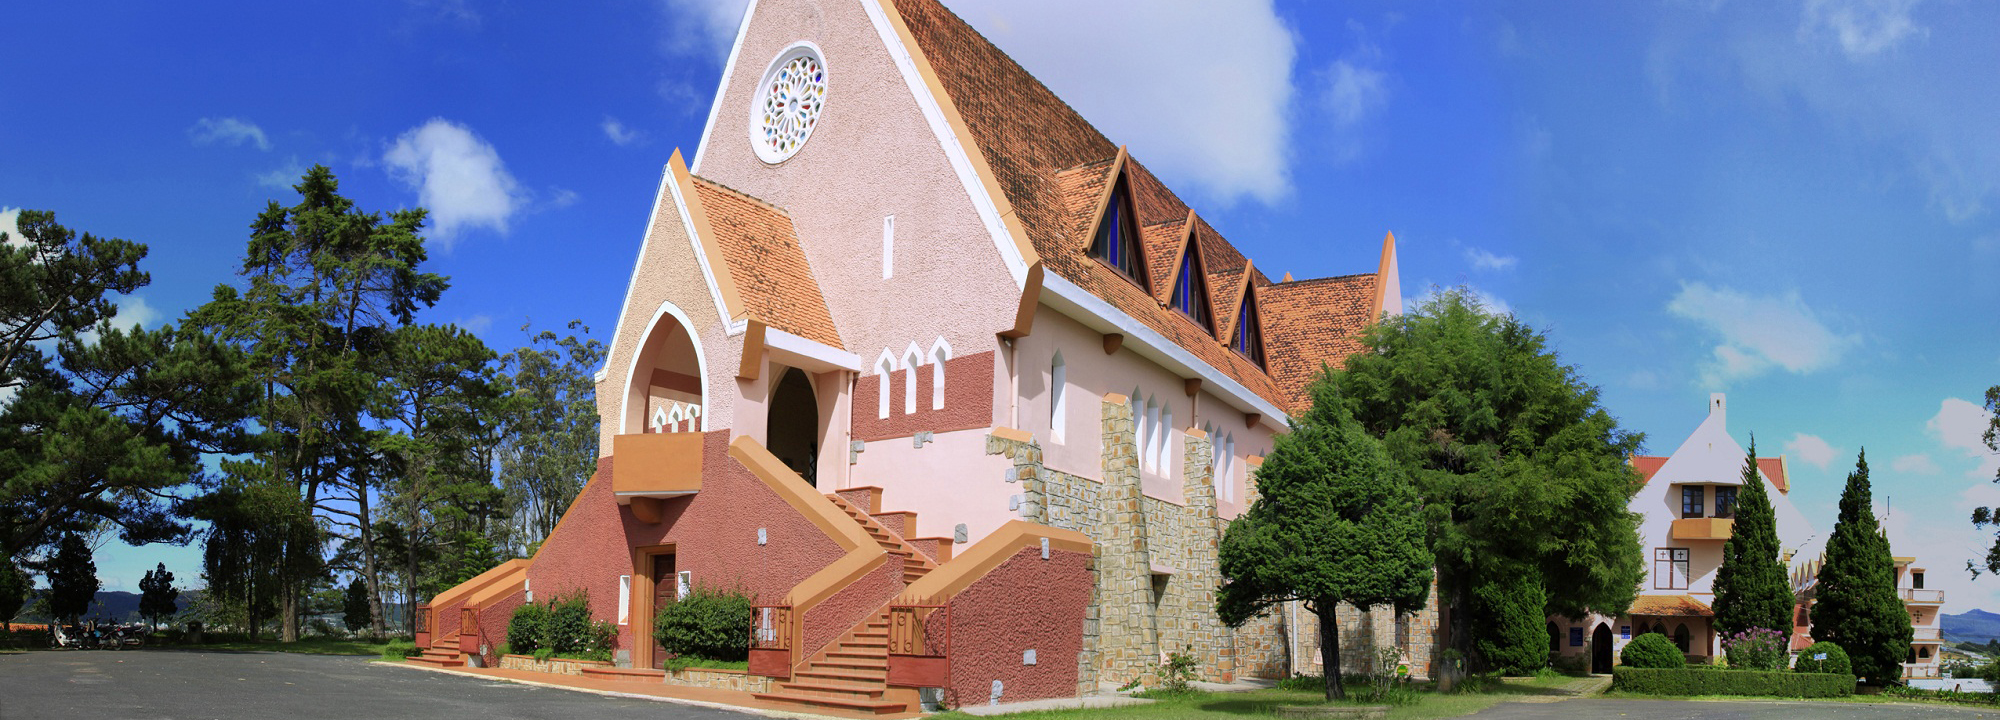 Nhà thờ Domaine De Marie - Dấu ấn châu Âu giữa lòng Đà Lạt